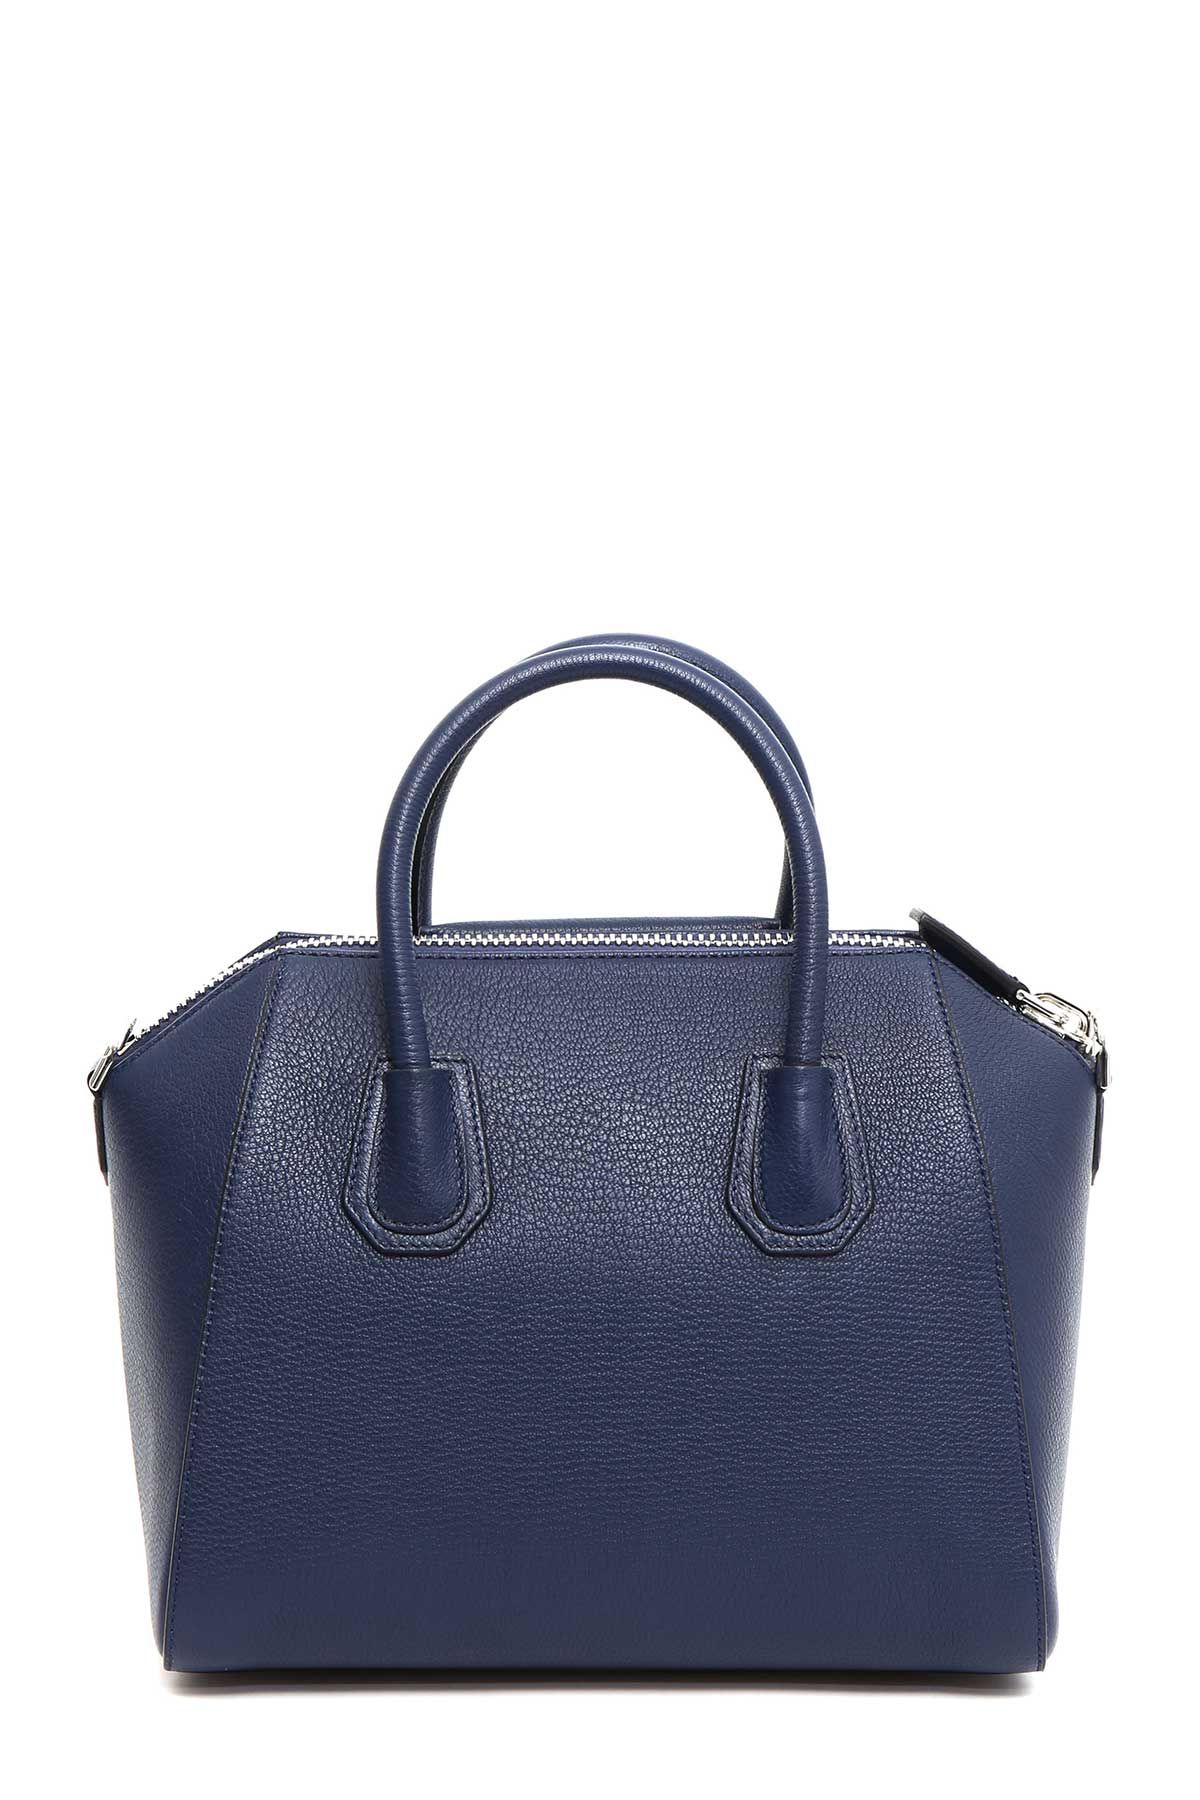 Givenchy - Givenchy 'antigona' Small Handbag - BB05117012 403, Women's ...